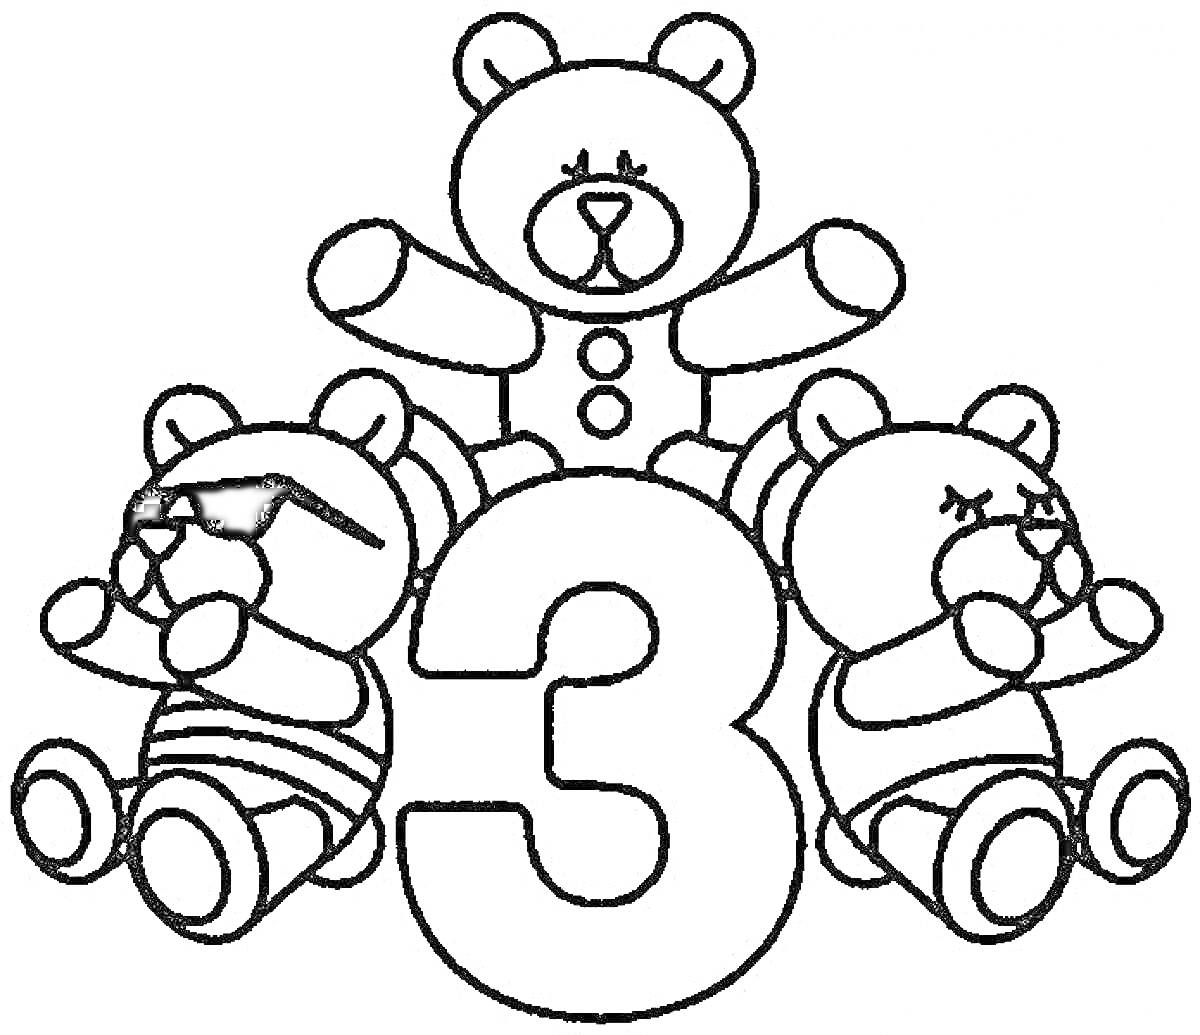 Раскраска Три медведя вокруг цифры 3